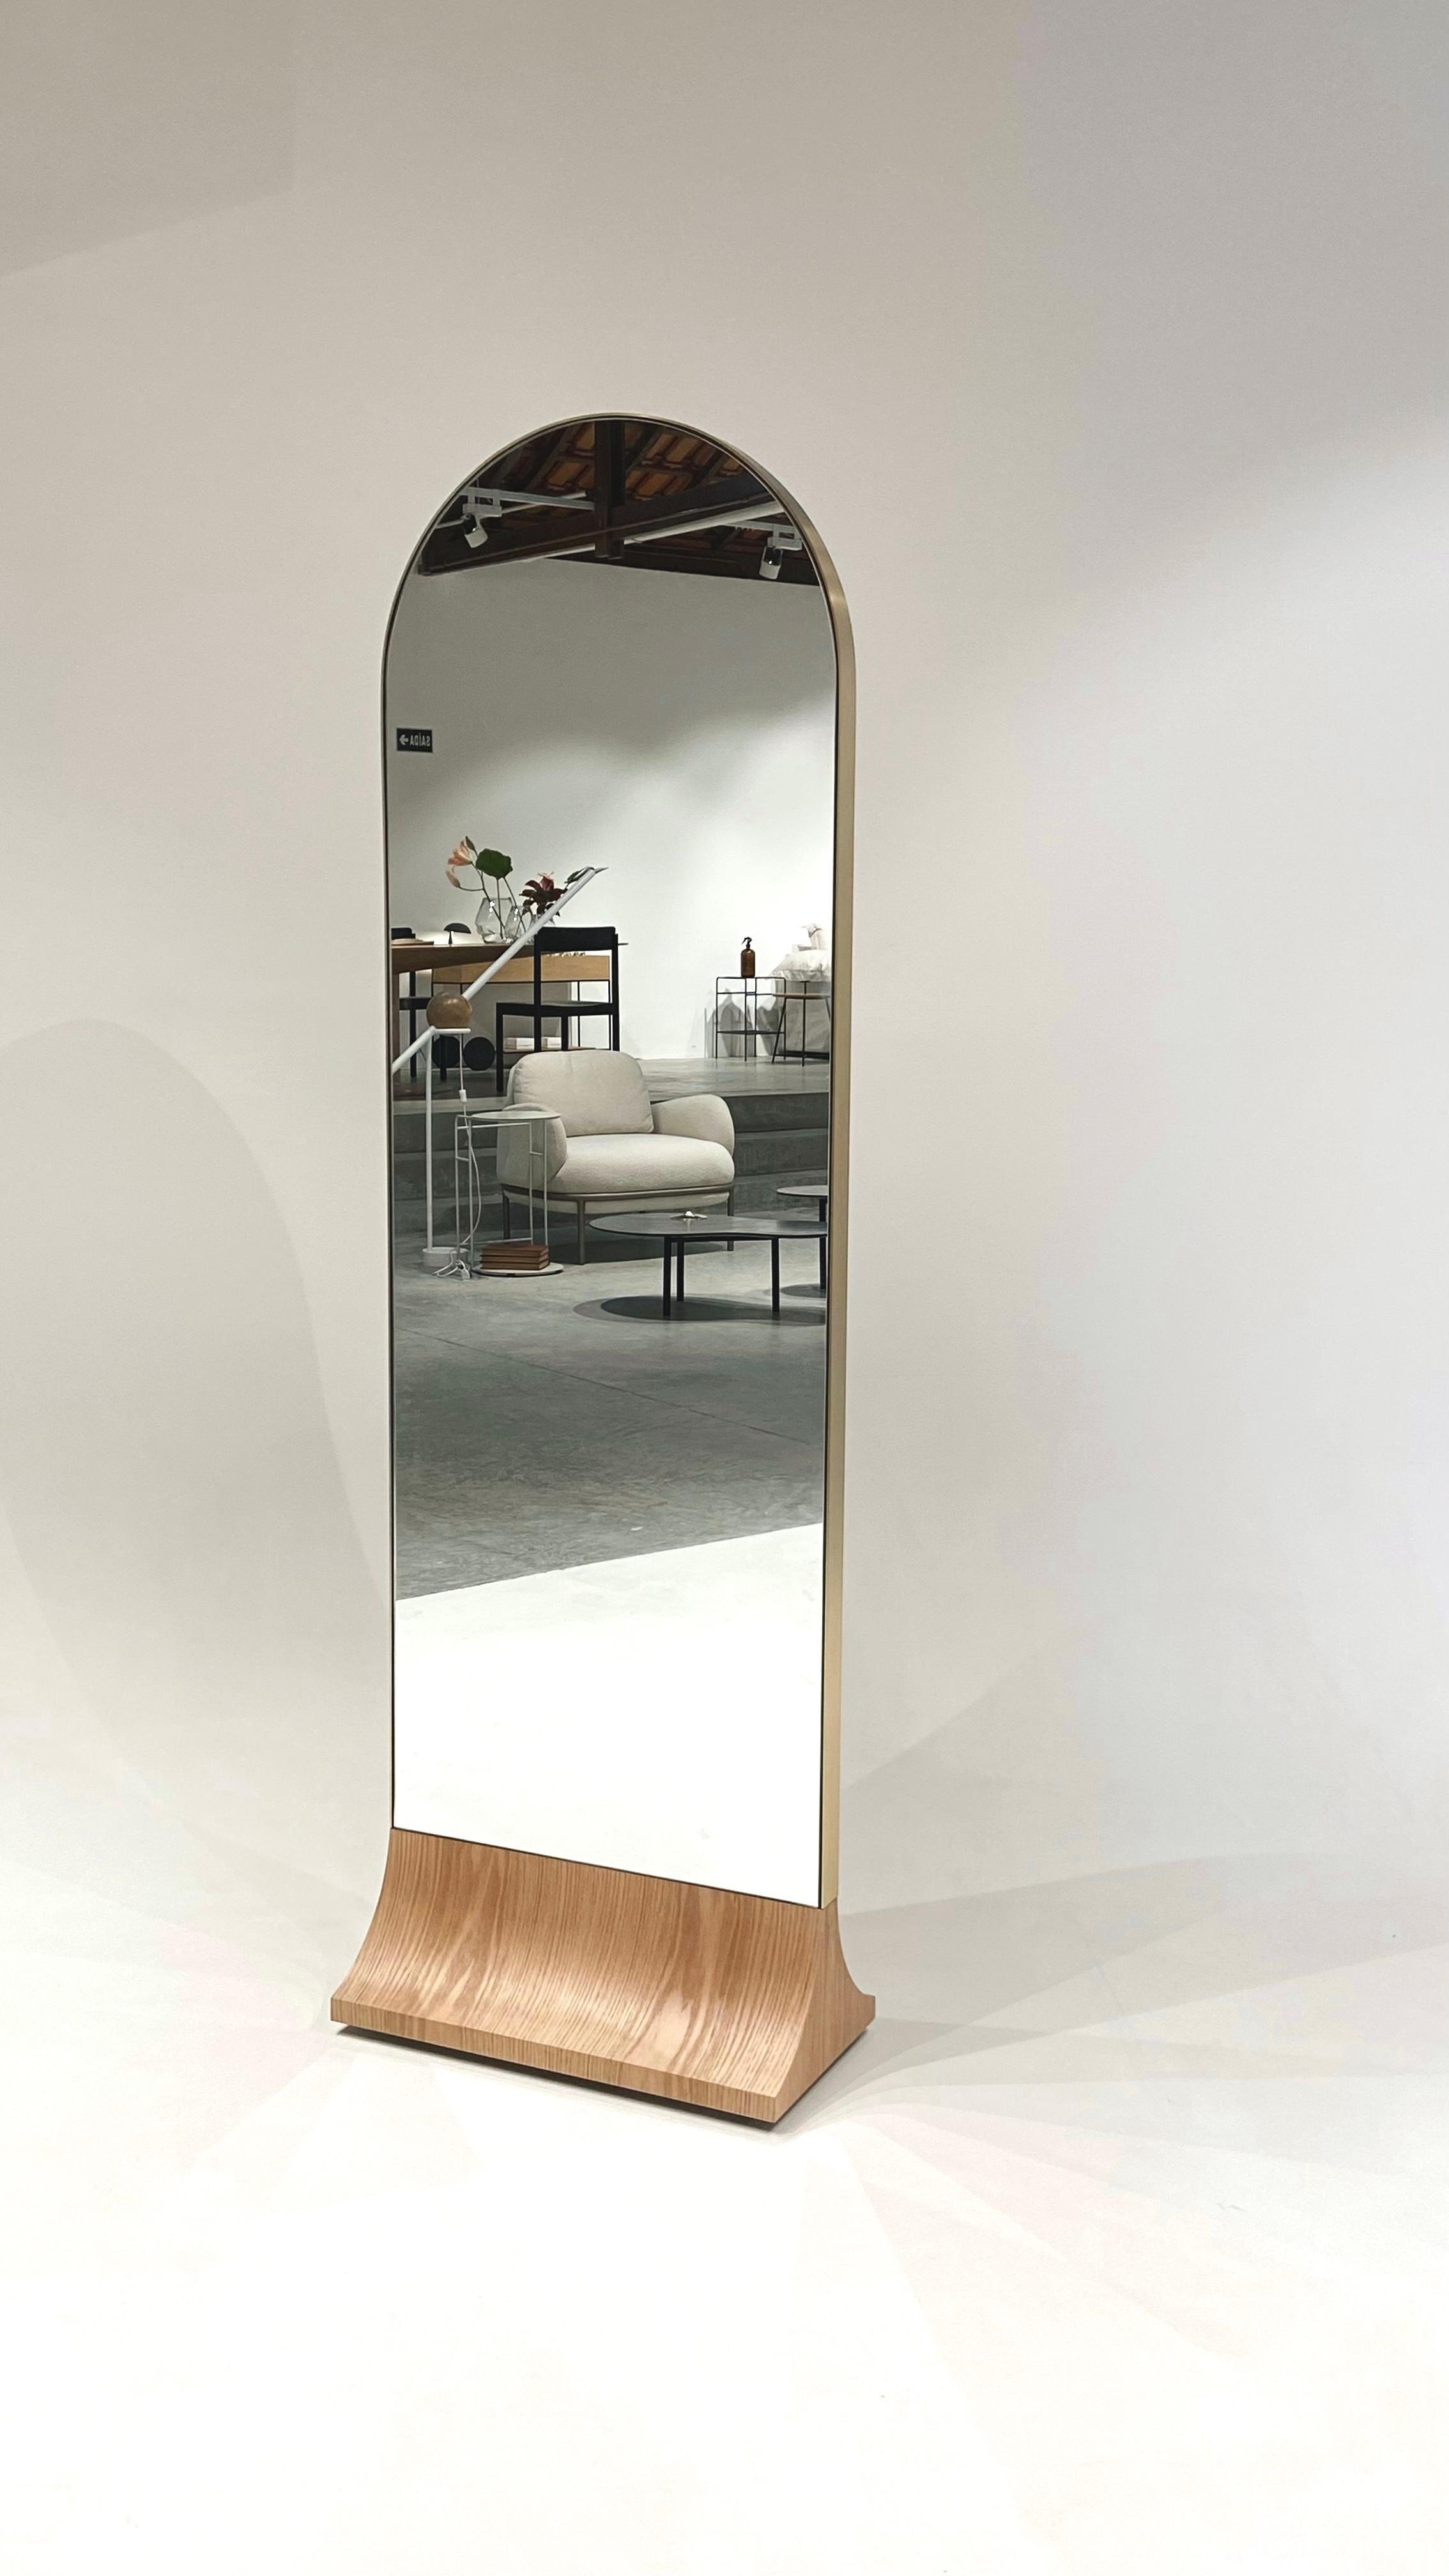 Der Taiz Floor Mirror wurde unter der Prämisse der Mobilität entworfen.
Seine selbsttragende Eigenschaft mit eingebauten Rollen ermöglicht eine einfache Mobilität und Flexibilität im täglichen Gebrauch, die sich an Licht- und andere Raumbedingungen